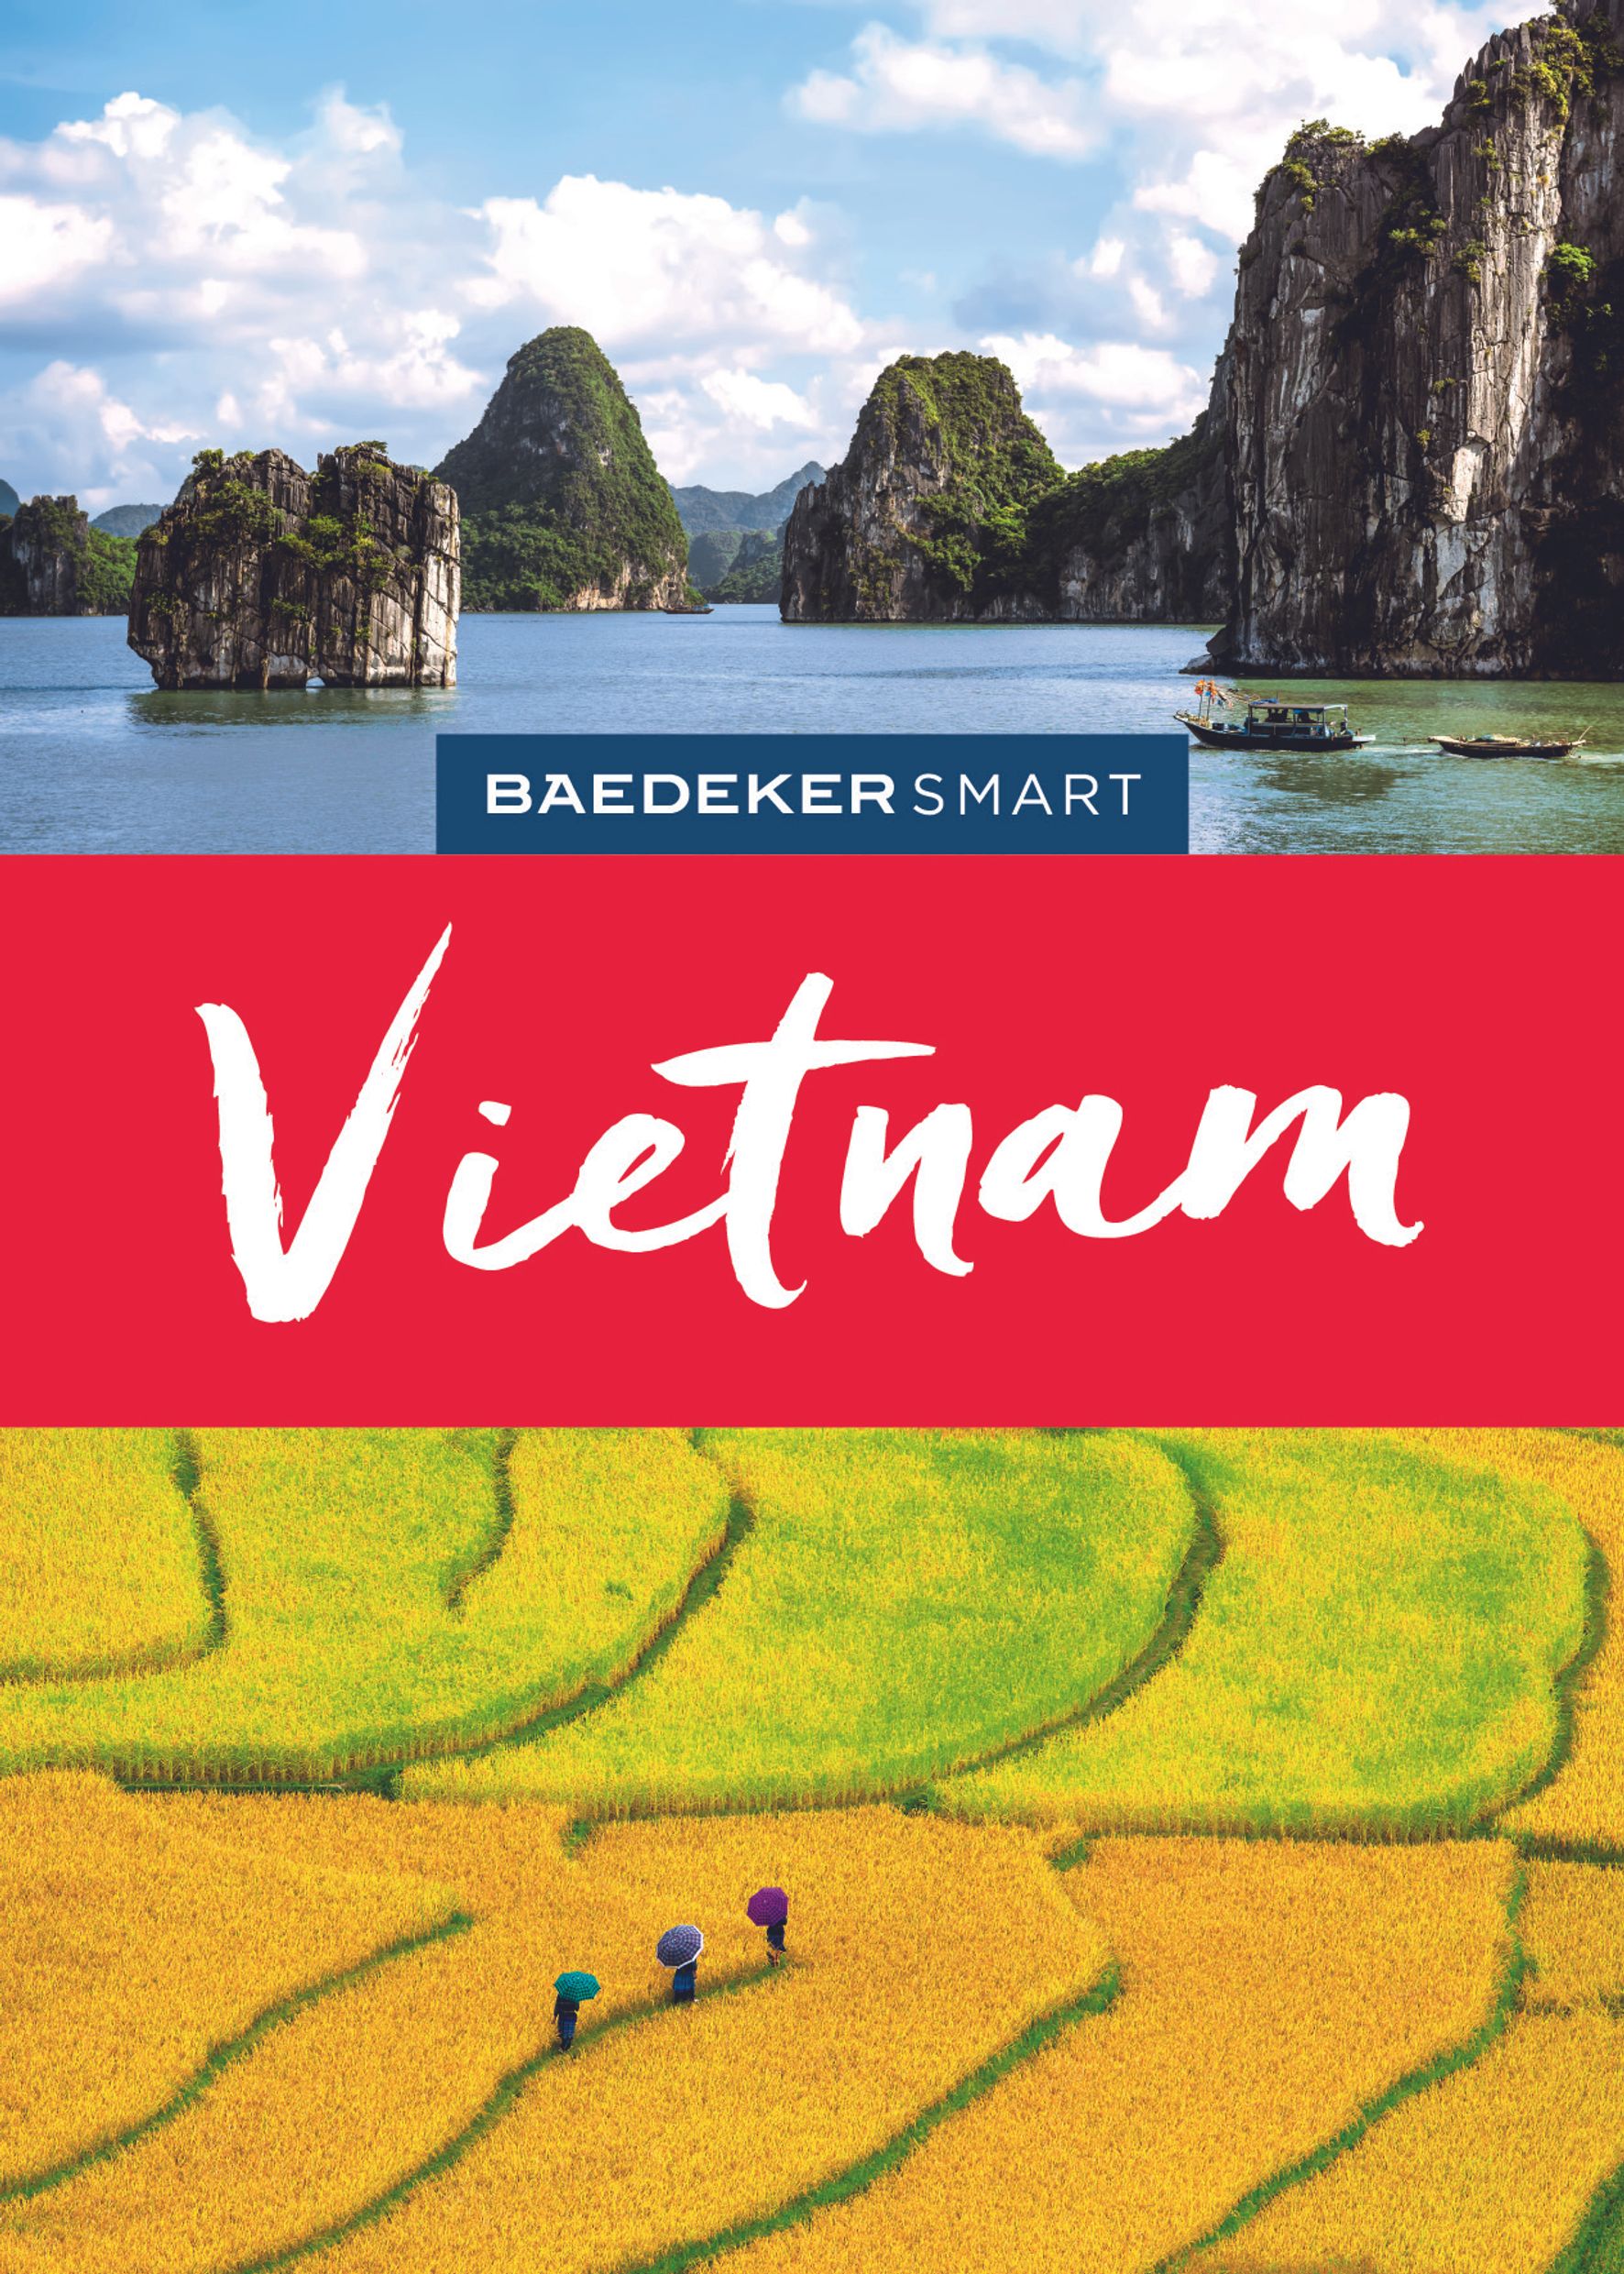 Baedeker Vietnam (eBook)